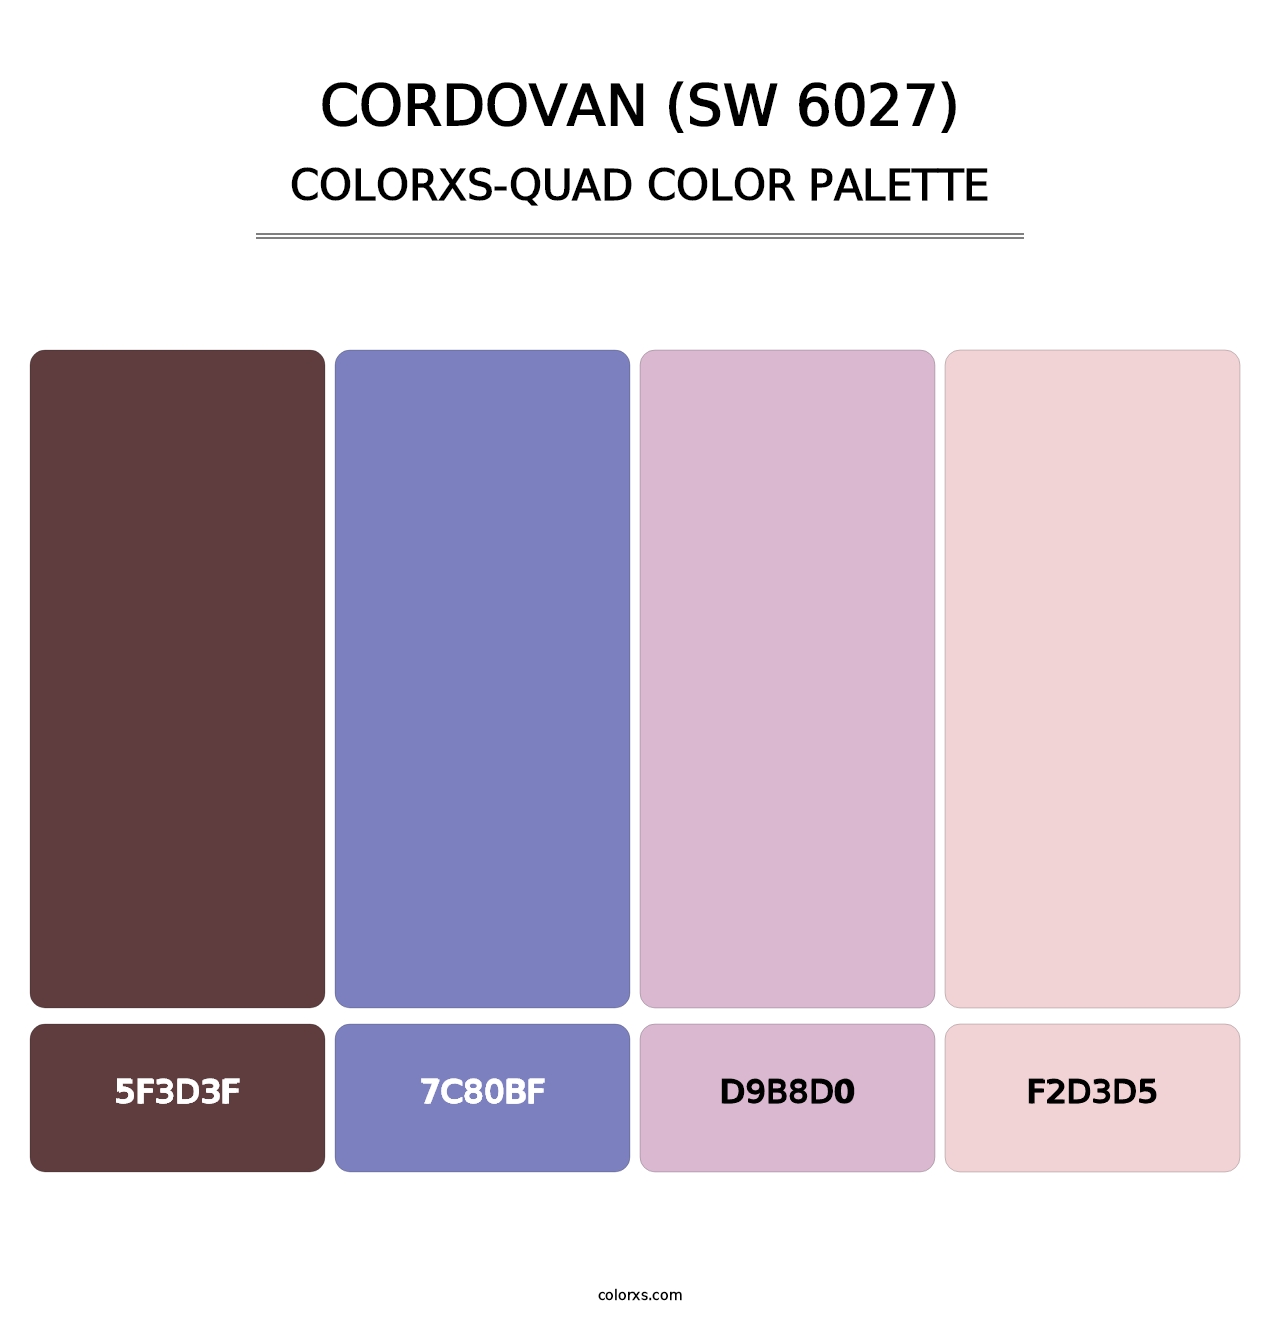 Cordovan (SW 6027) - Colorxs Quad Palette